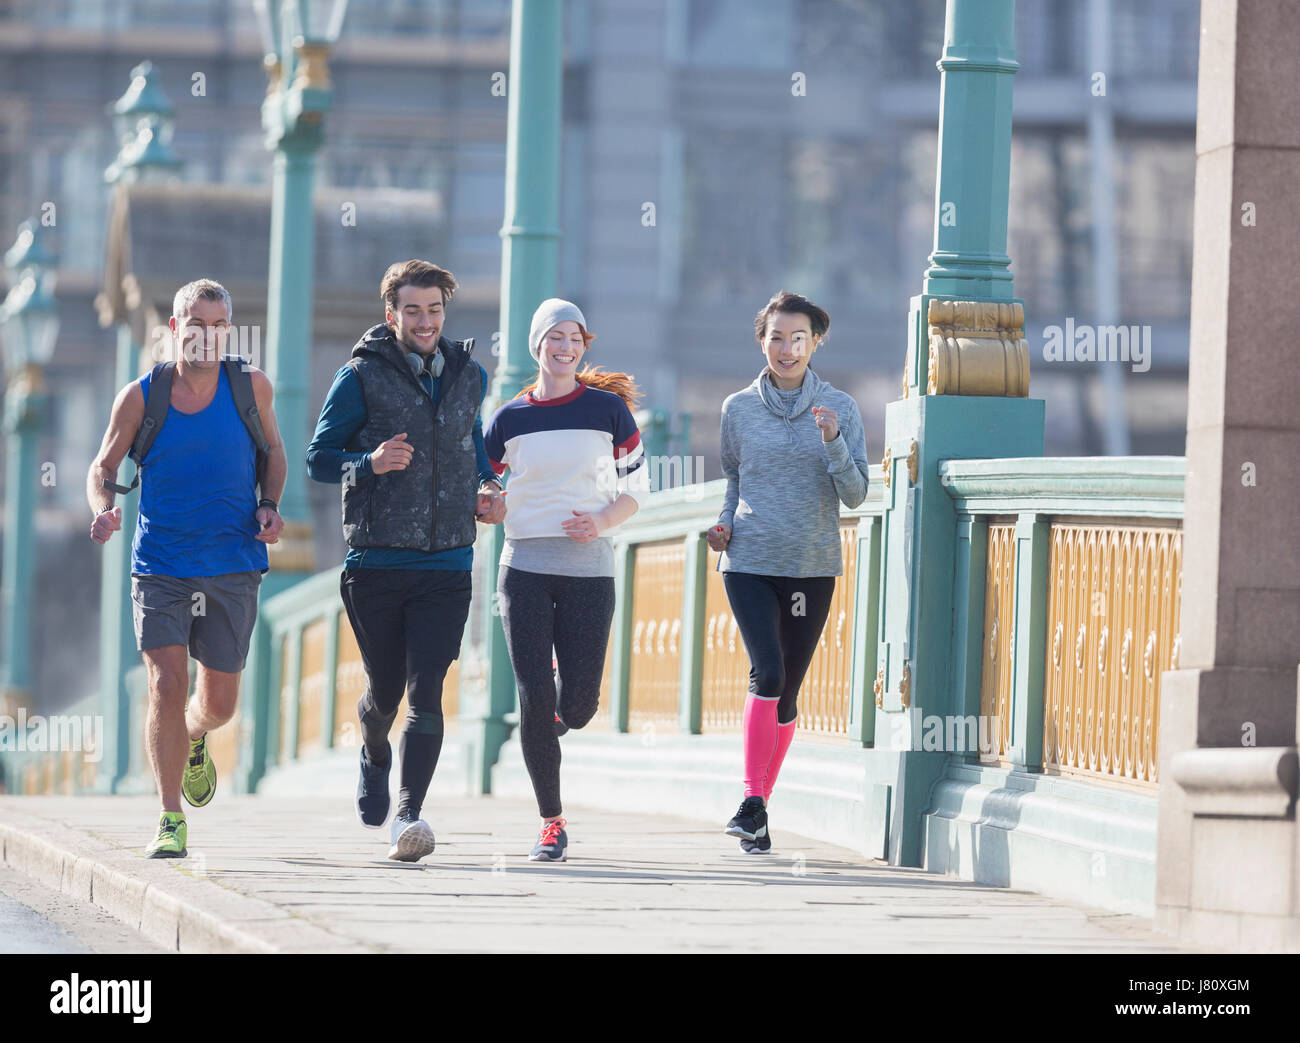 Läufer laufen auf sonnigen städtischen Bürgersteig Stockfoto